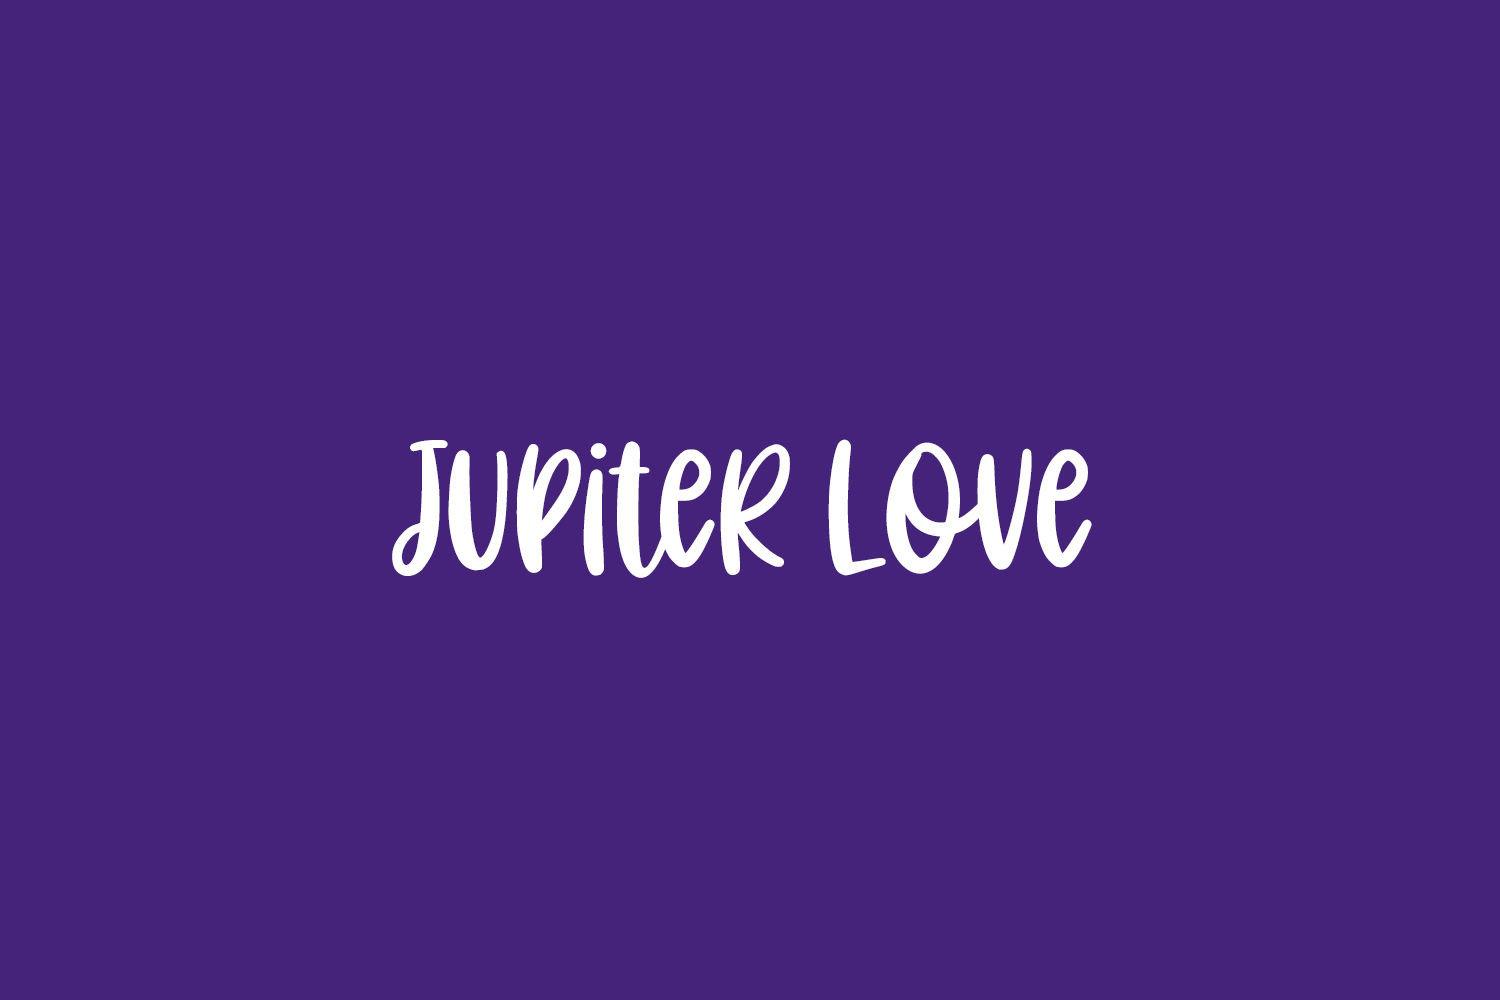 Jupiter Love Free Font